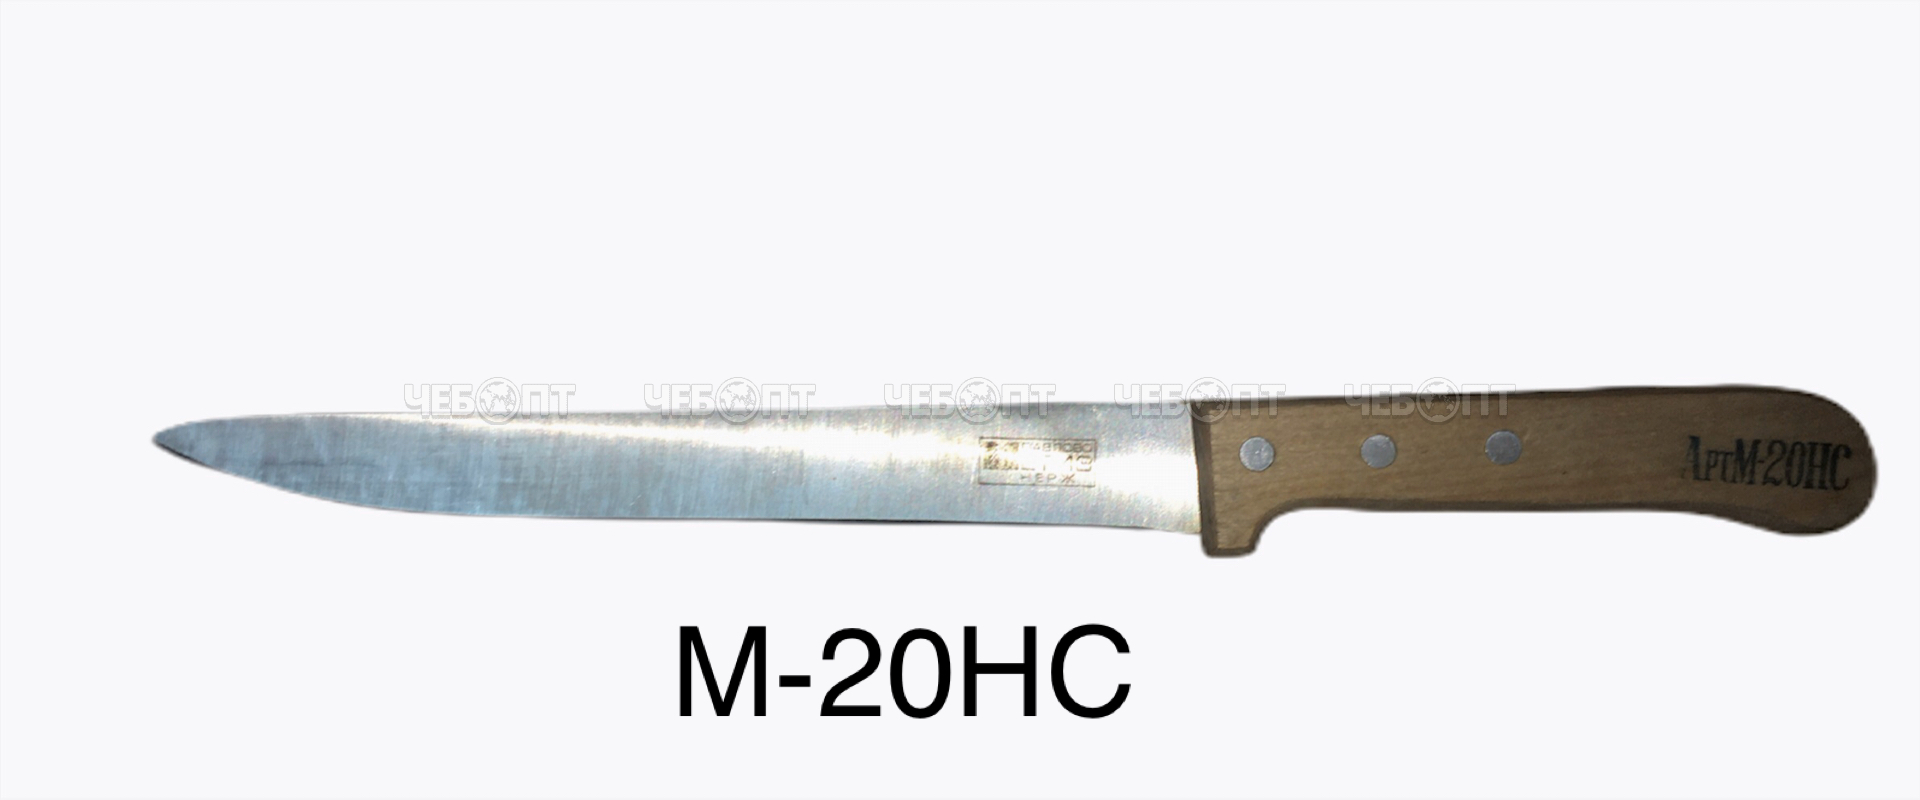 Нож универсальный для субпродуктов арт. М-20НС [10]. ЧЕБОПТ.